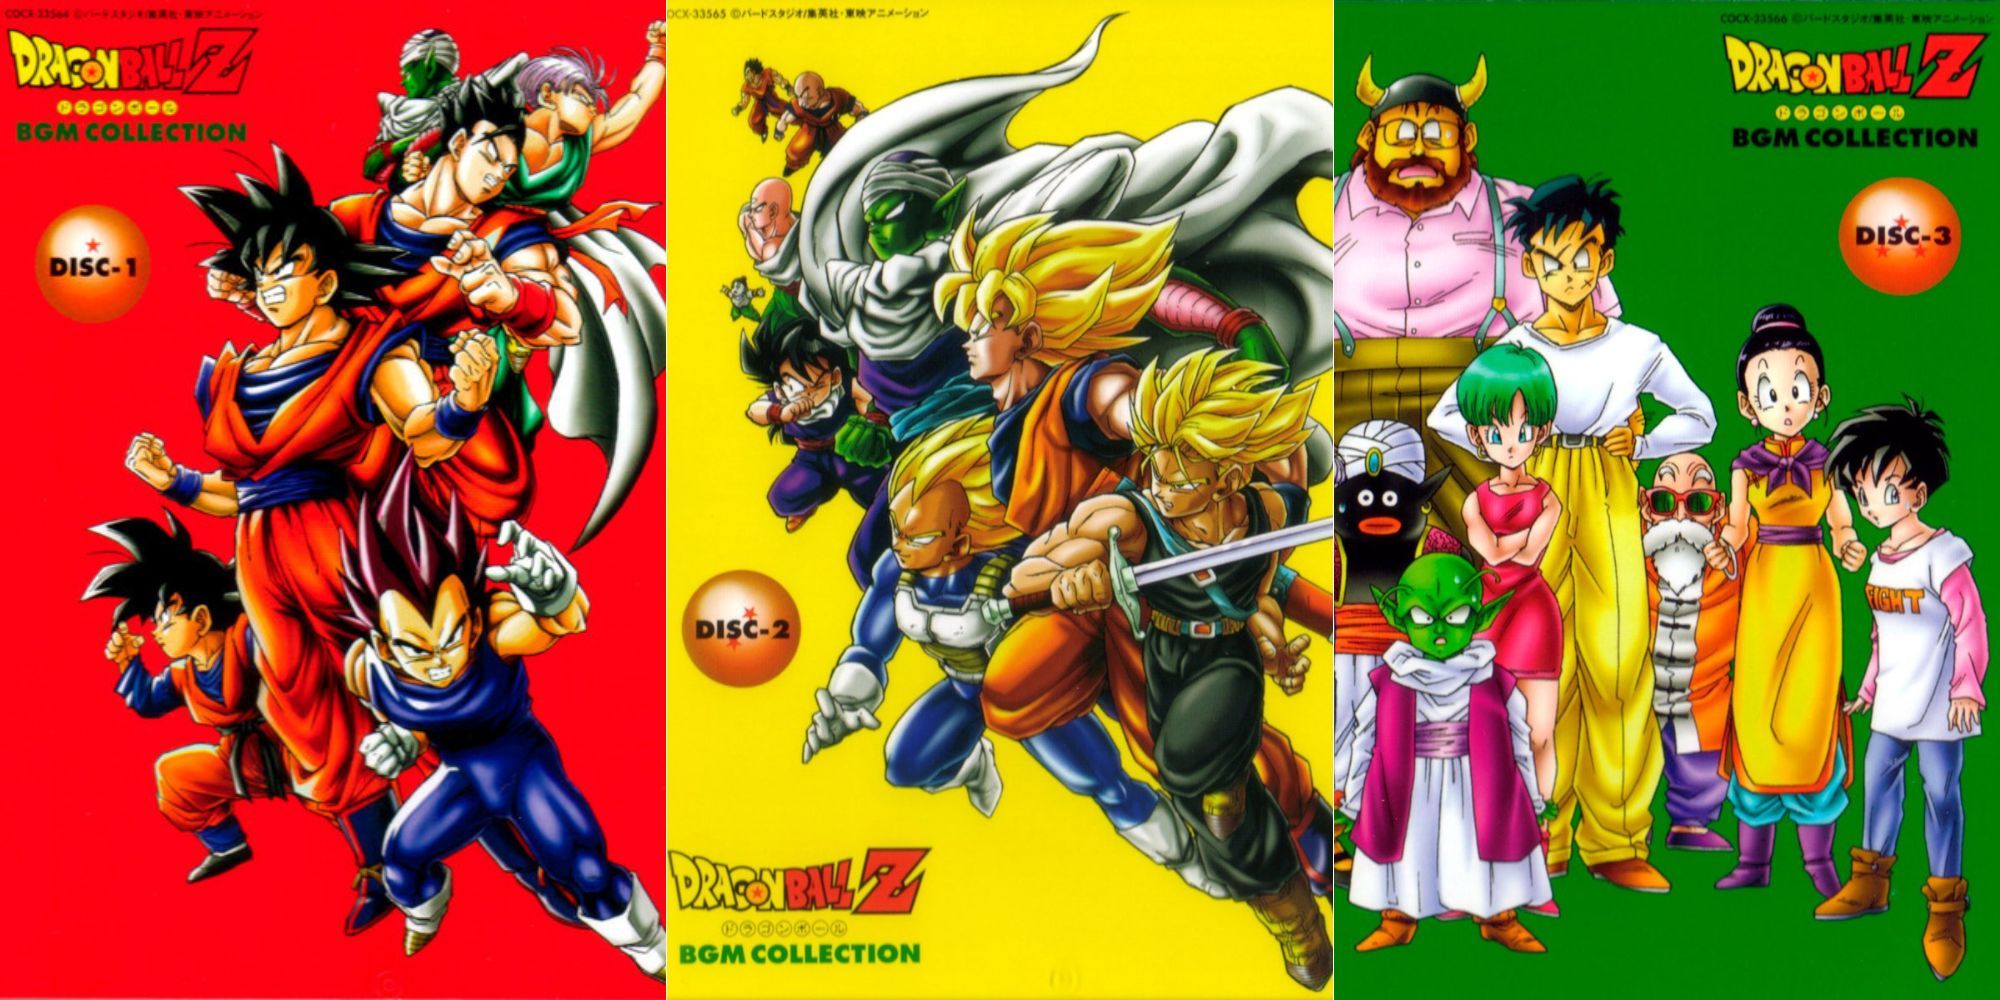 Top Dragon Ball: Top Dragon Ball Kai ep 1 - Prologue to Battle